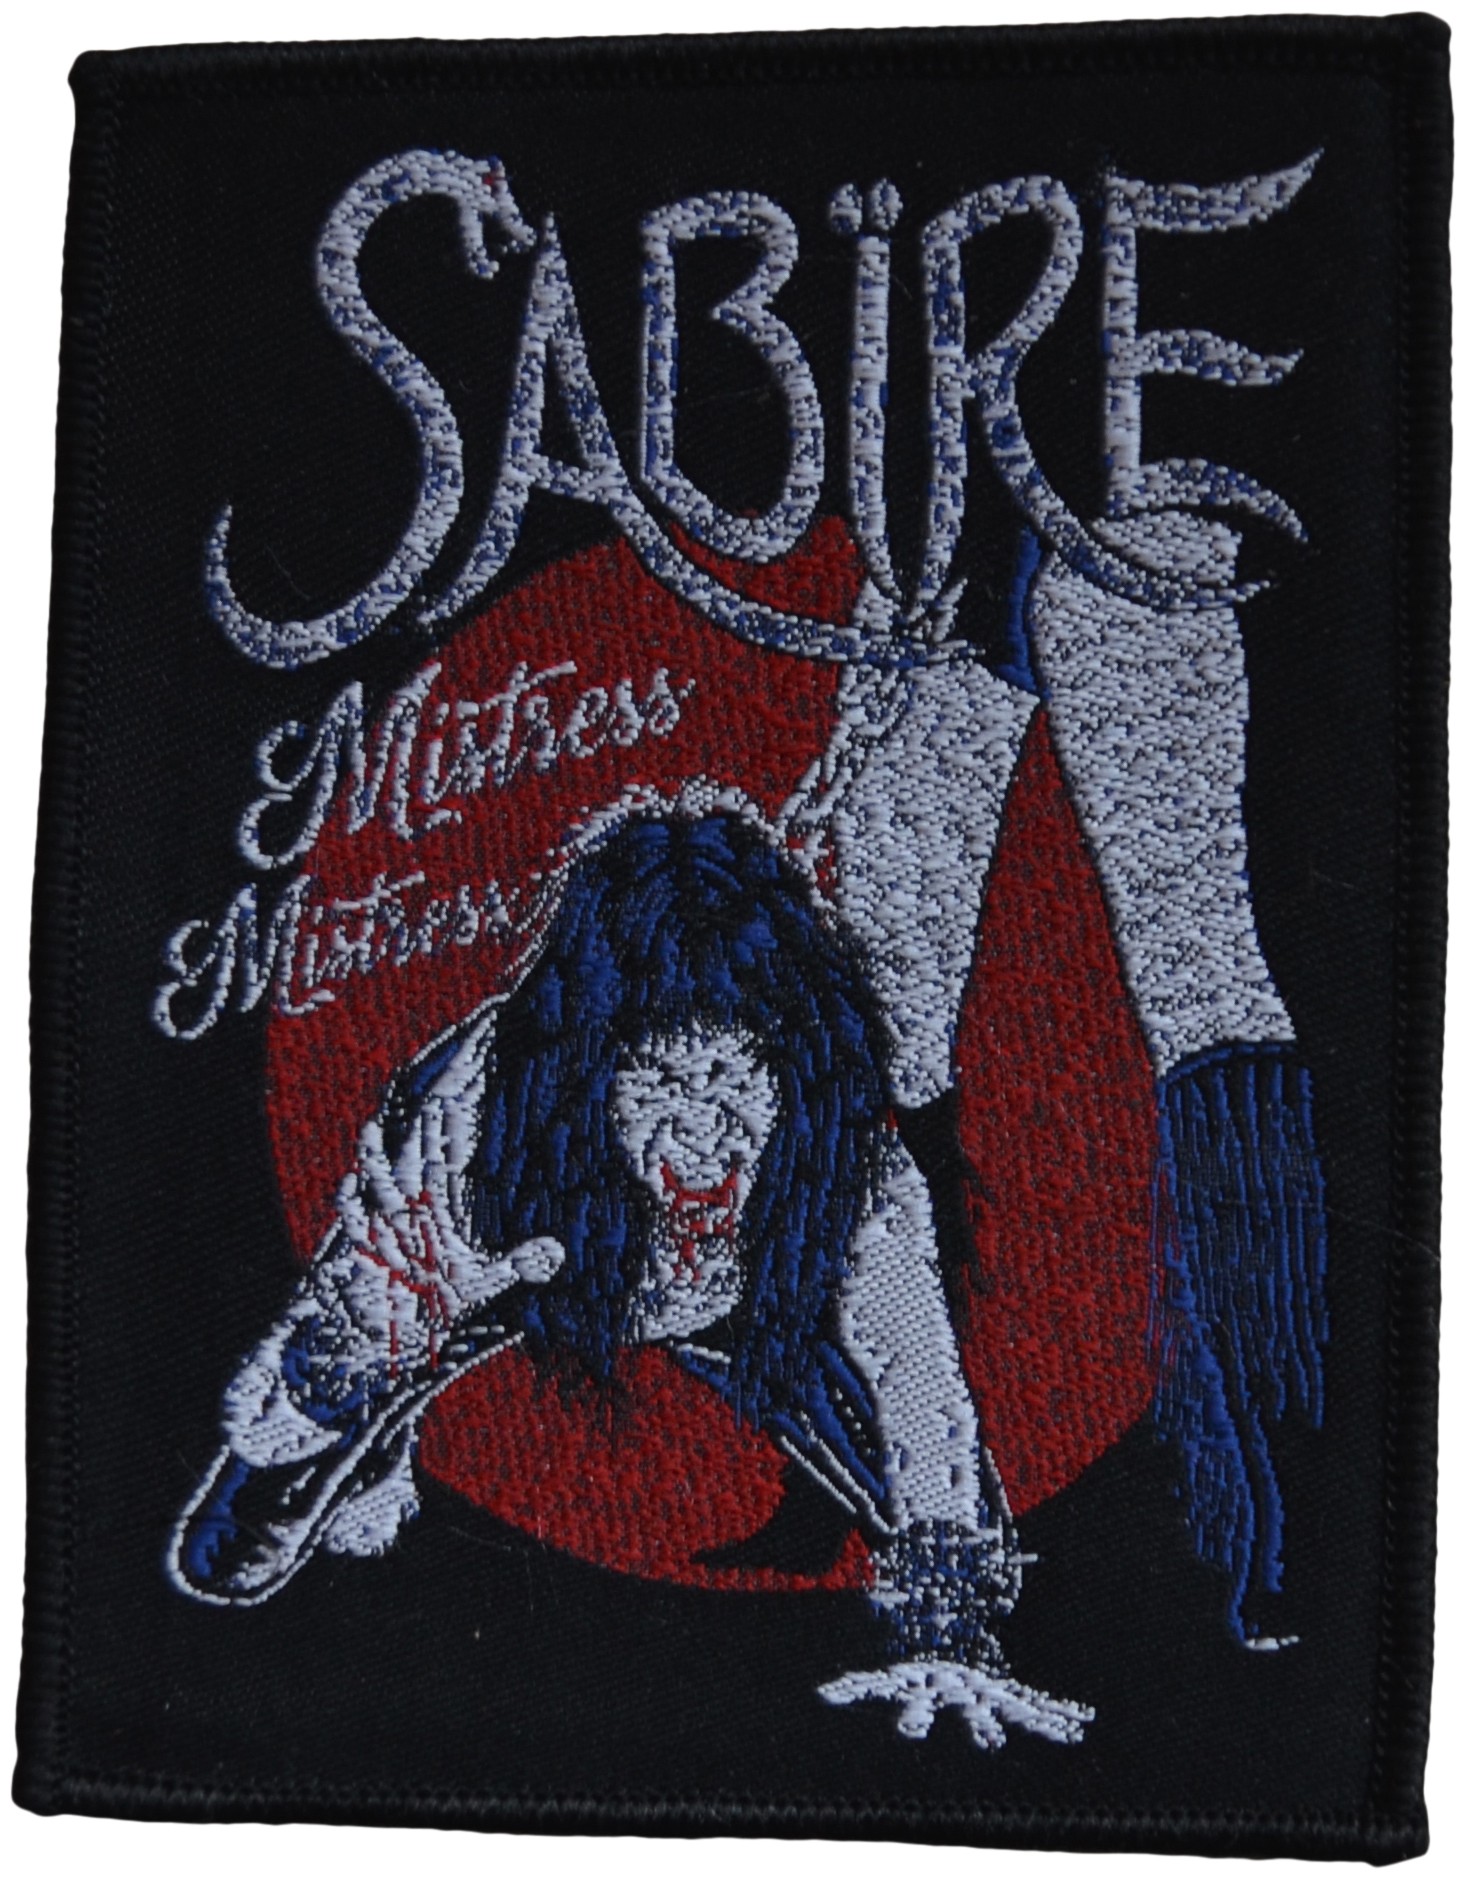 Sabire - Mistress Mistress